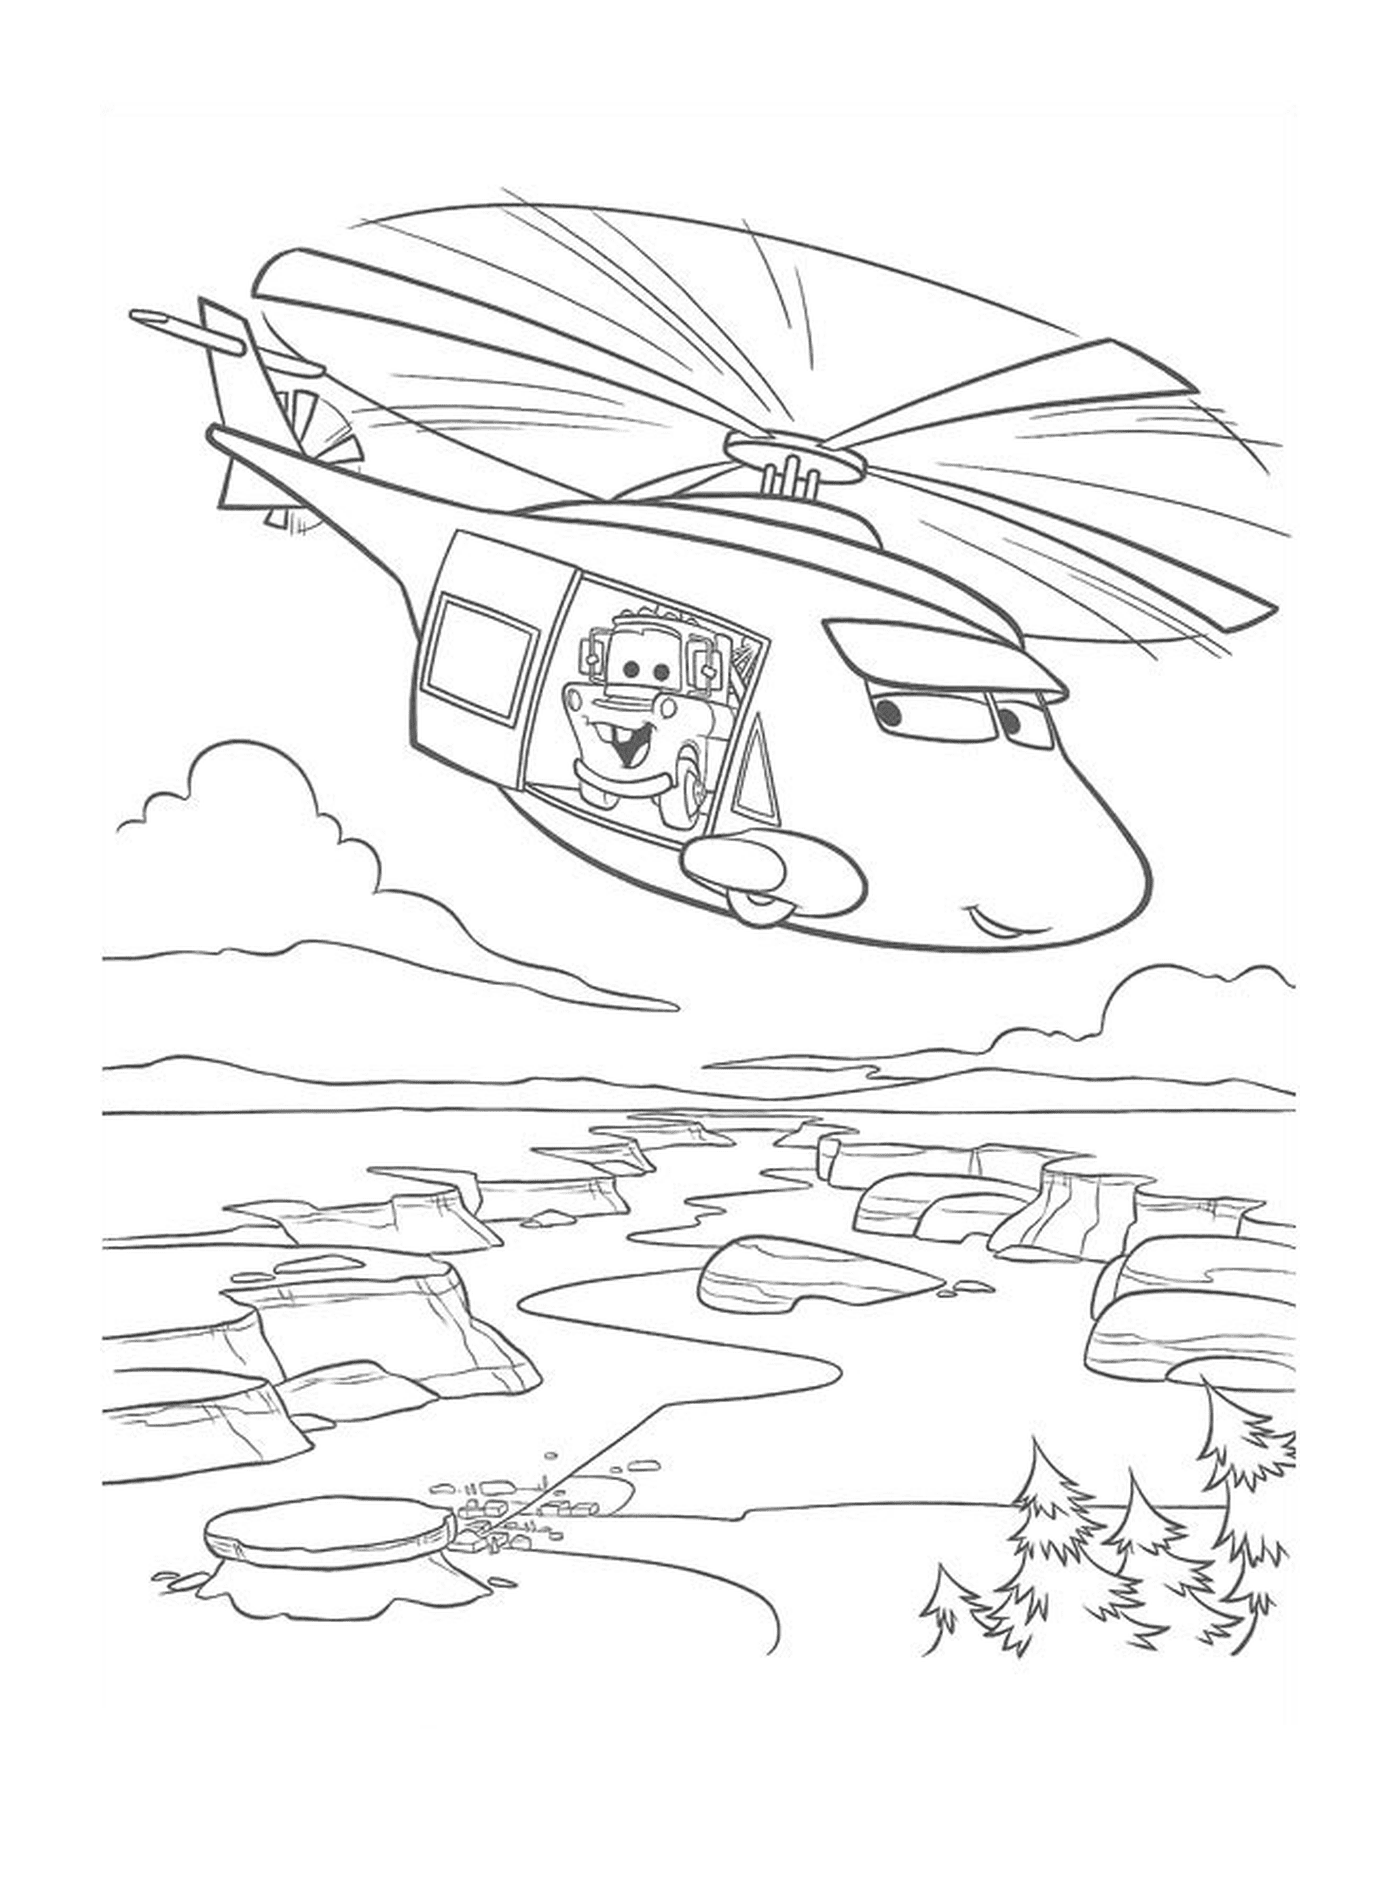   Tour d'hélicoptère avec Flash McQueen 